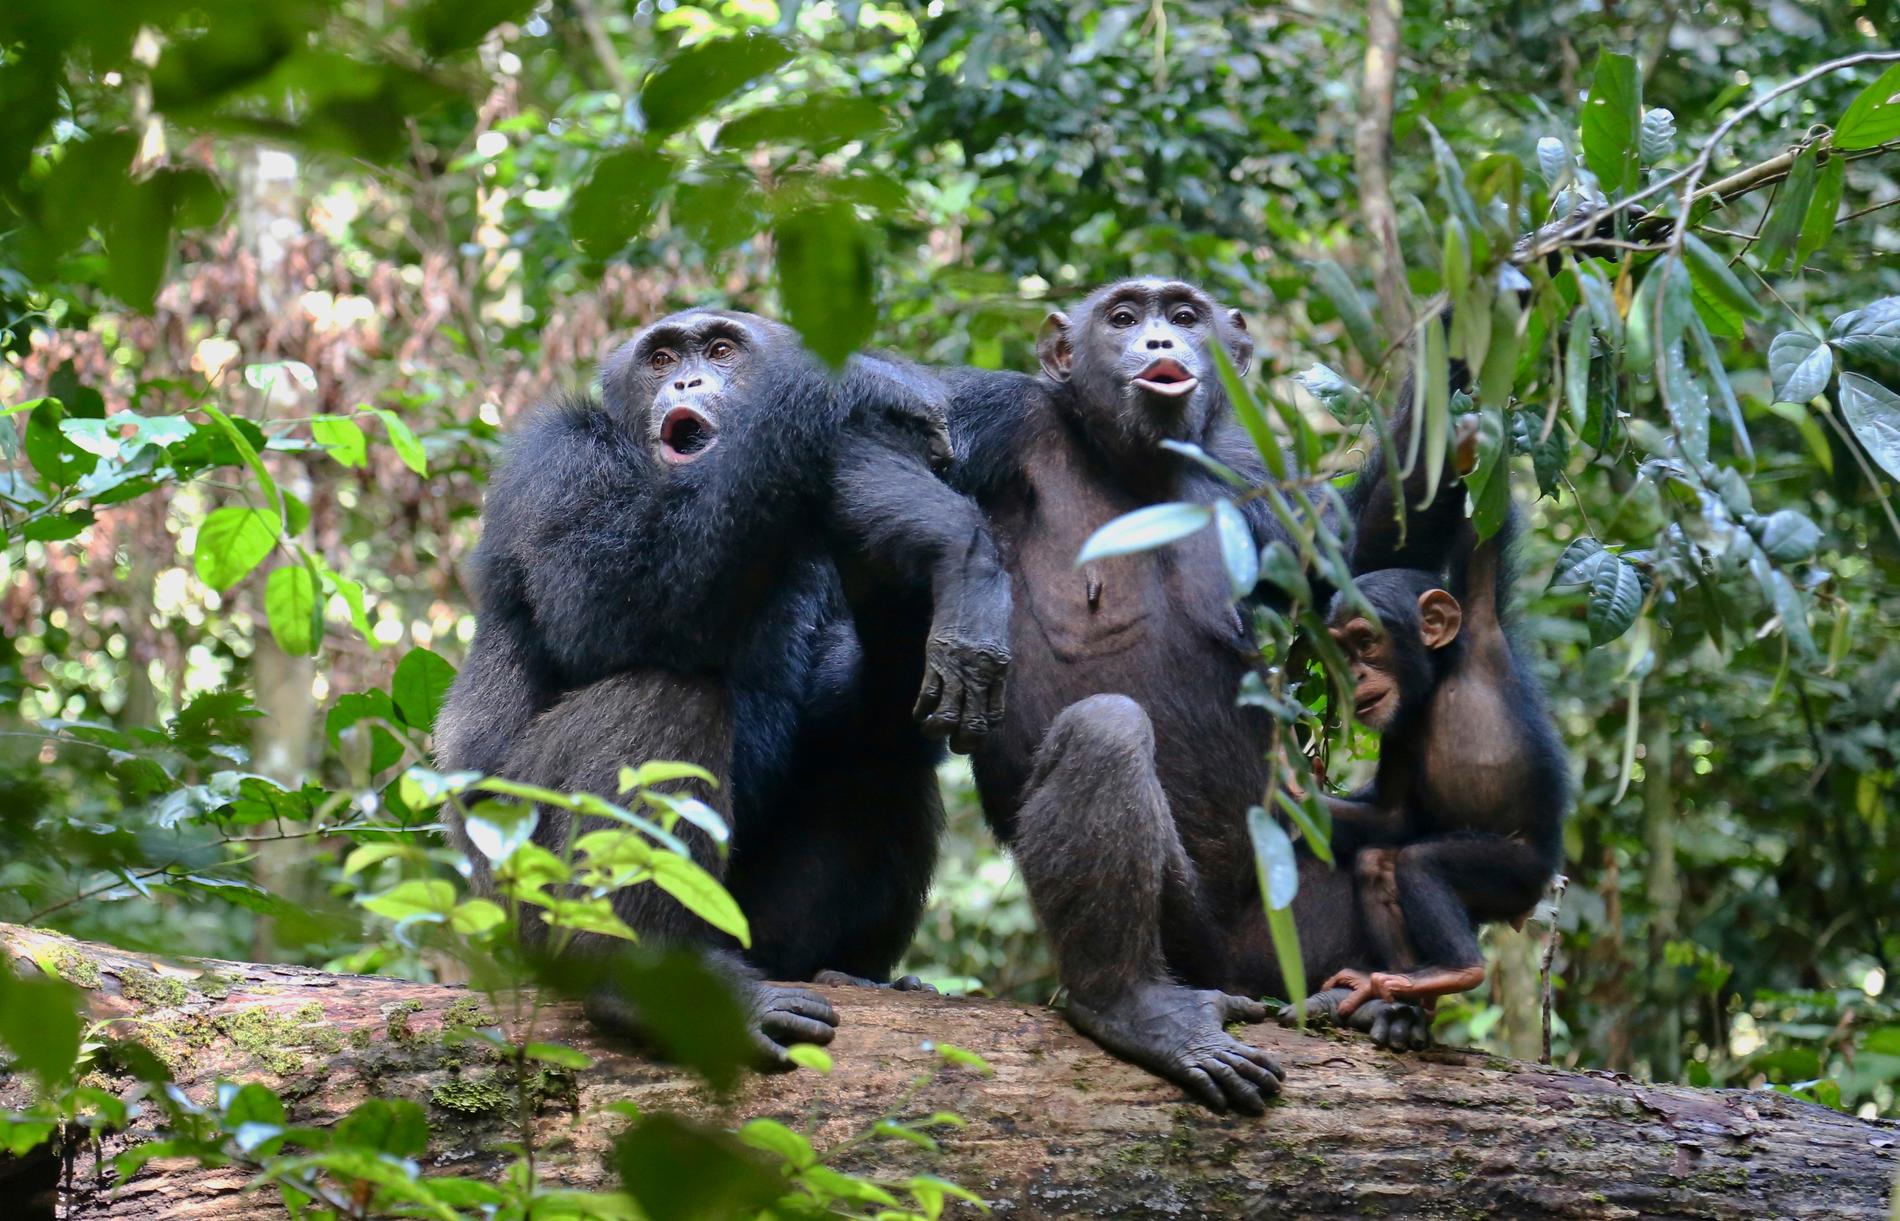 Schimpanser finns bland de arter som enligt studien troligtvis löper stor risk att infekteras av sars-cov-2. Arkivbild från en nationalpark i Elfenbenskusten 2016.